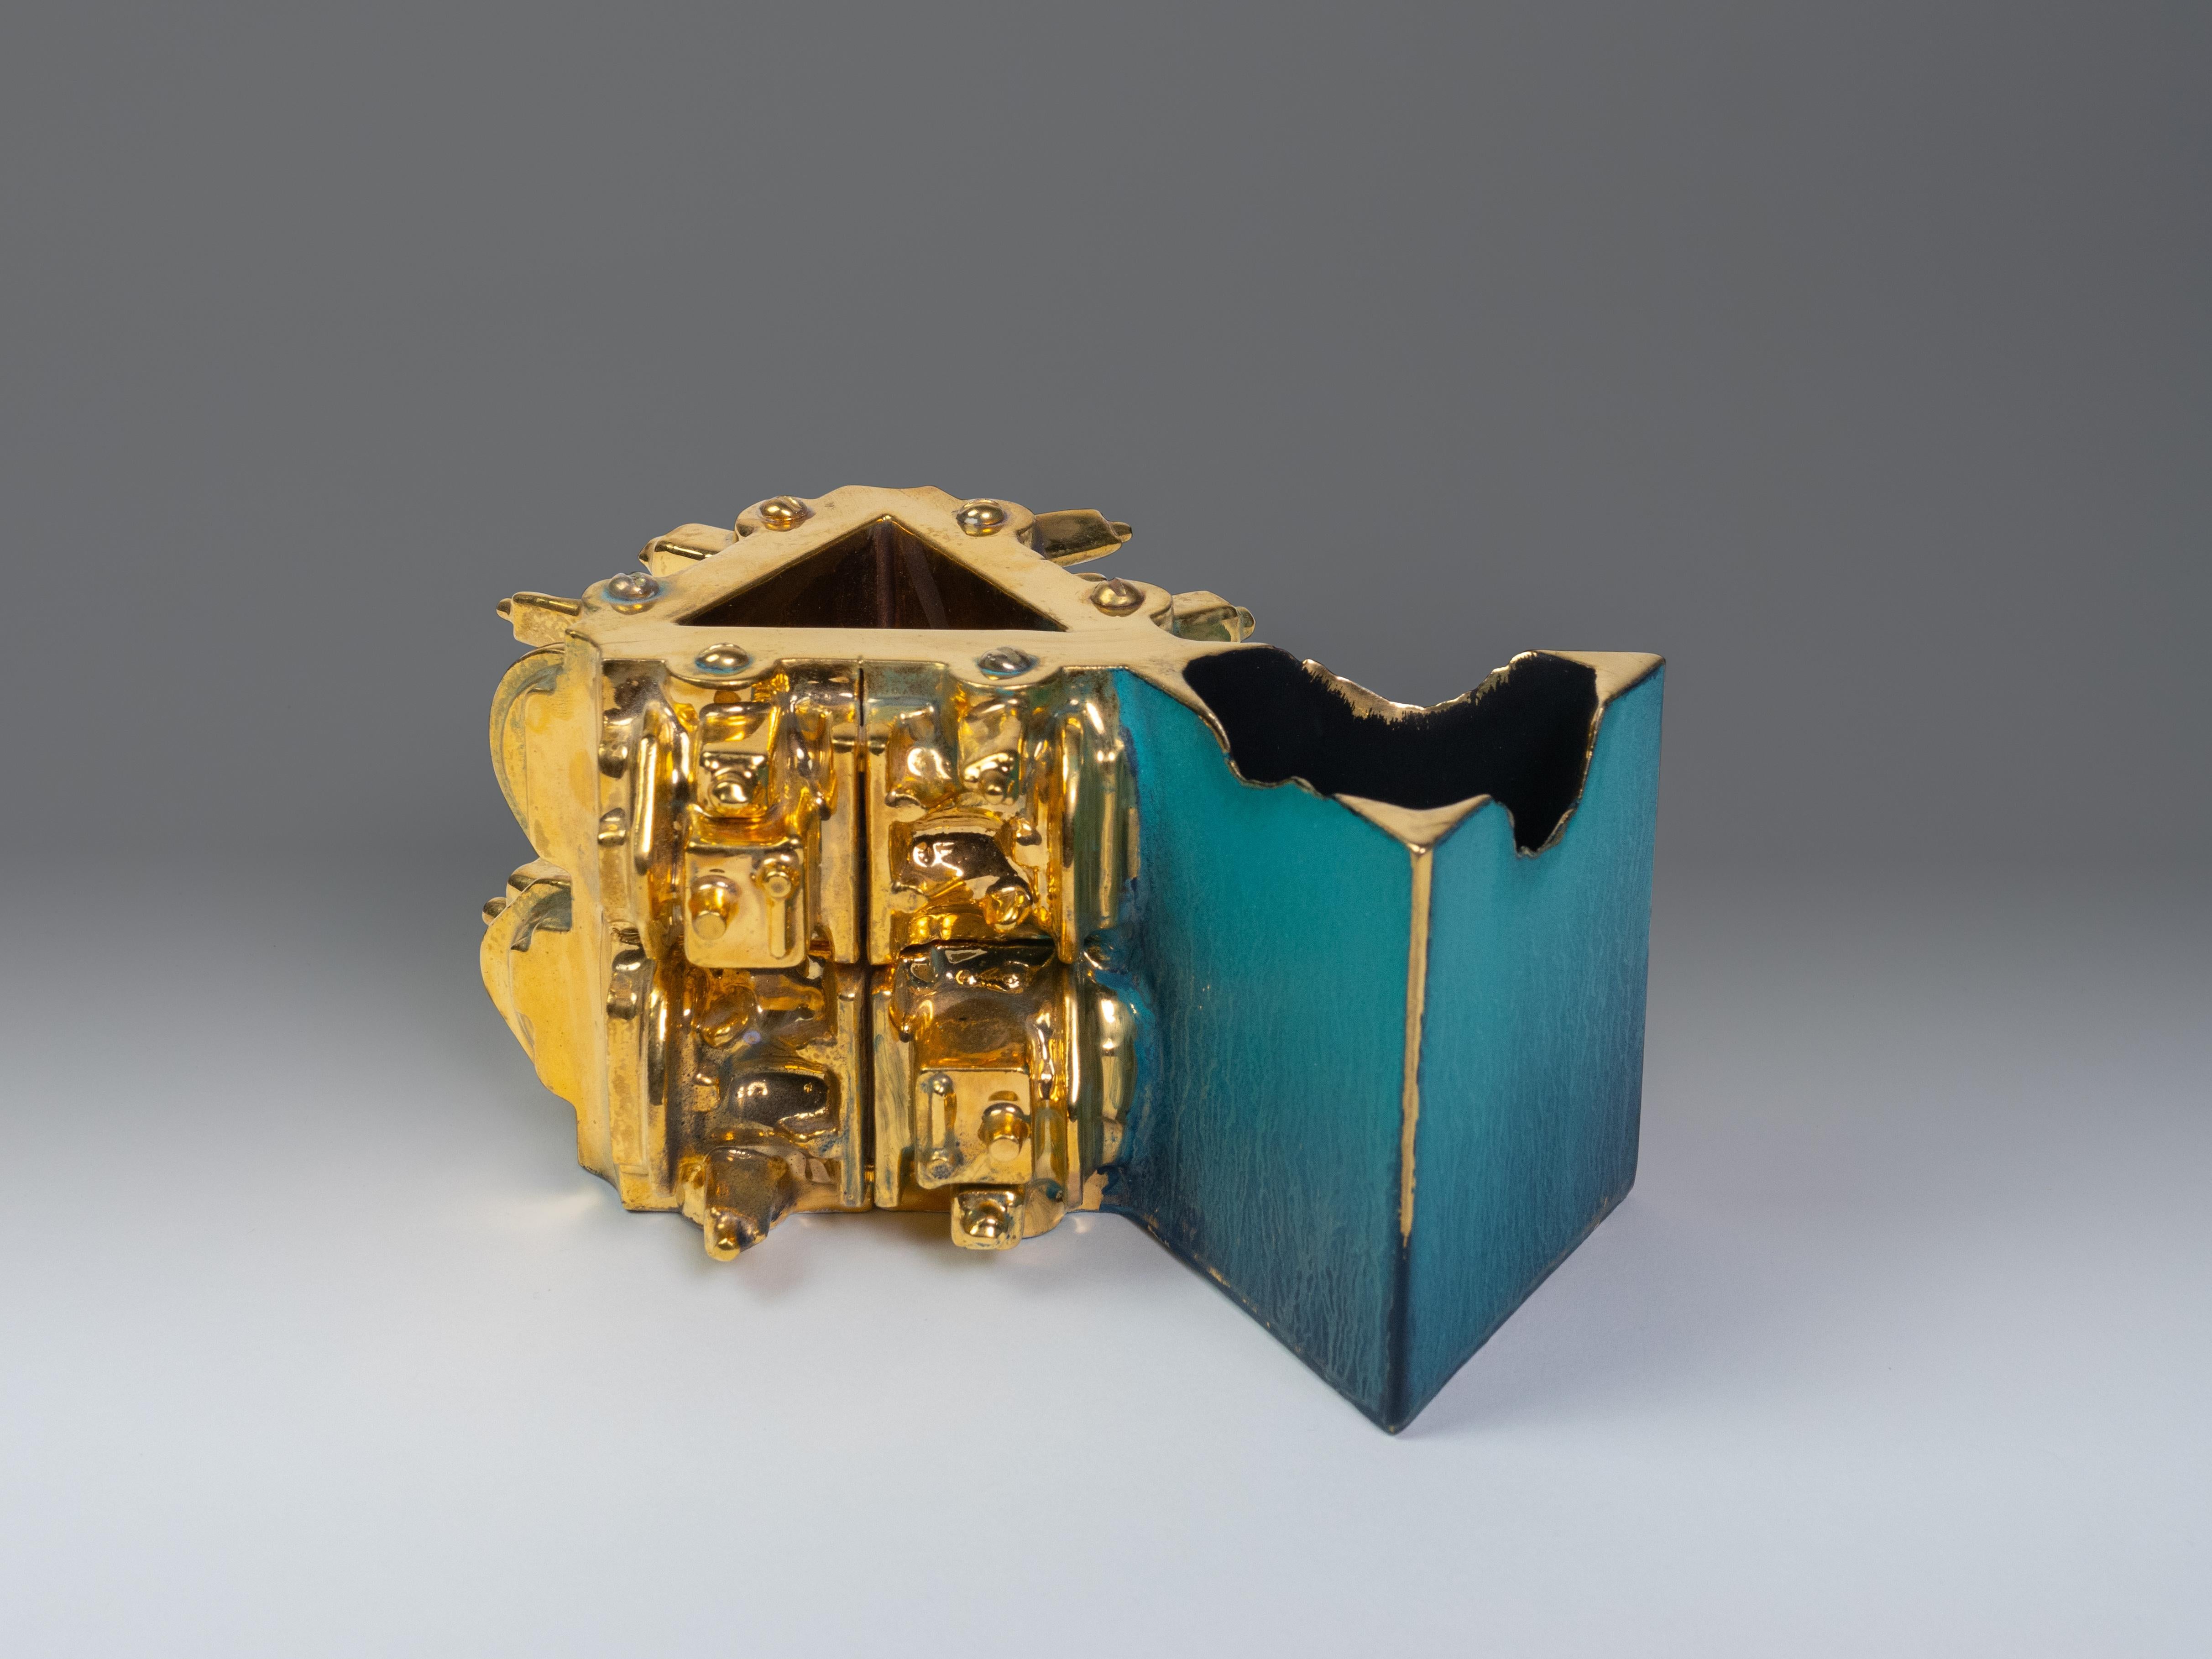 Steven Montgomery Abstract Sculpture – "Tasse mit Dreiecken", Contemporary, Keramik, Skulptur, Goldglanz, Glasur